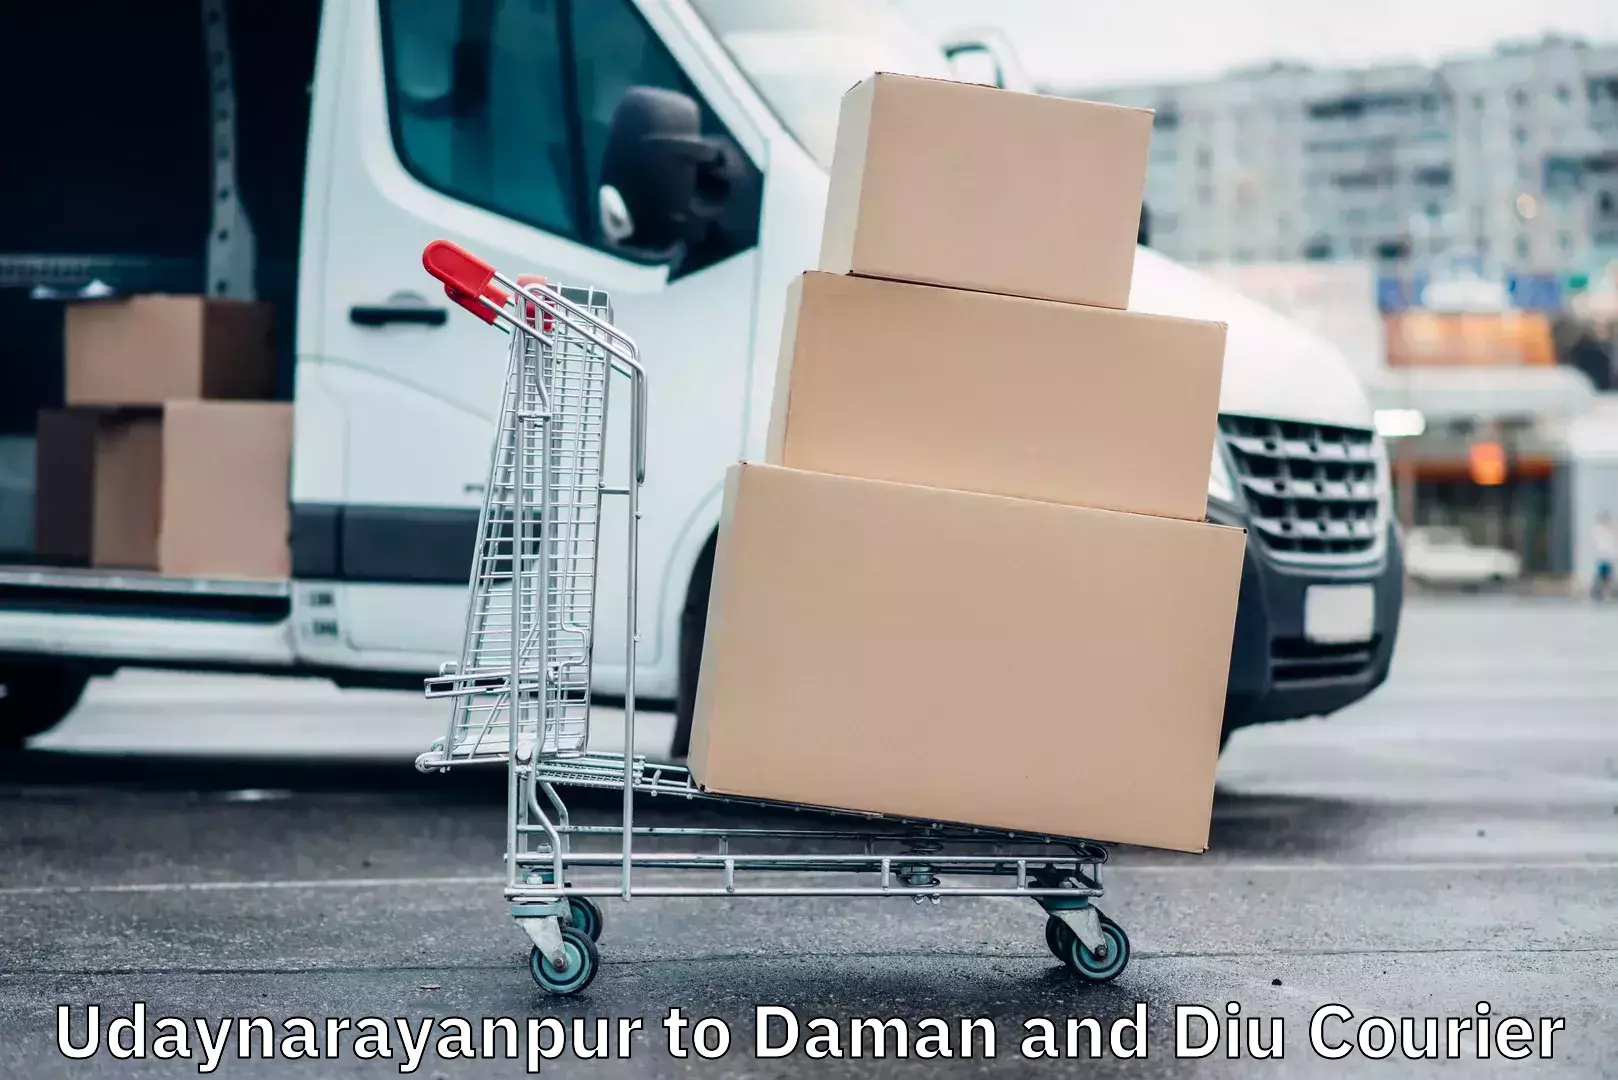 Bulk courier orders Udaynarayanpur to Daman and Diu